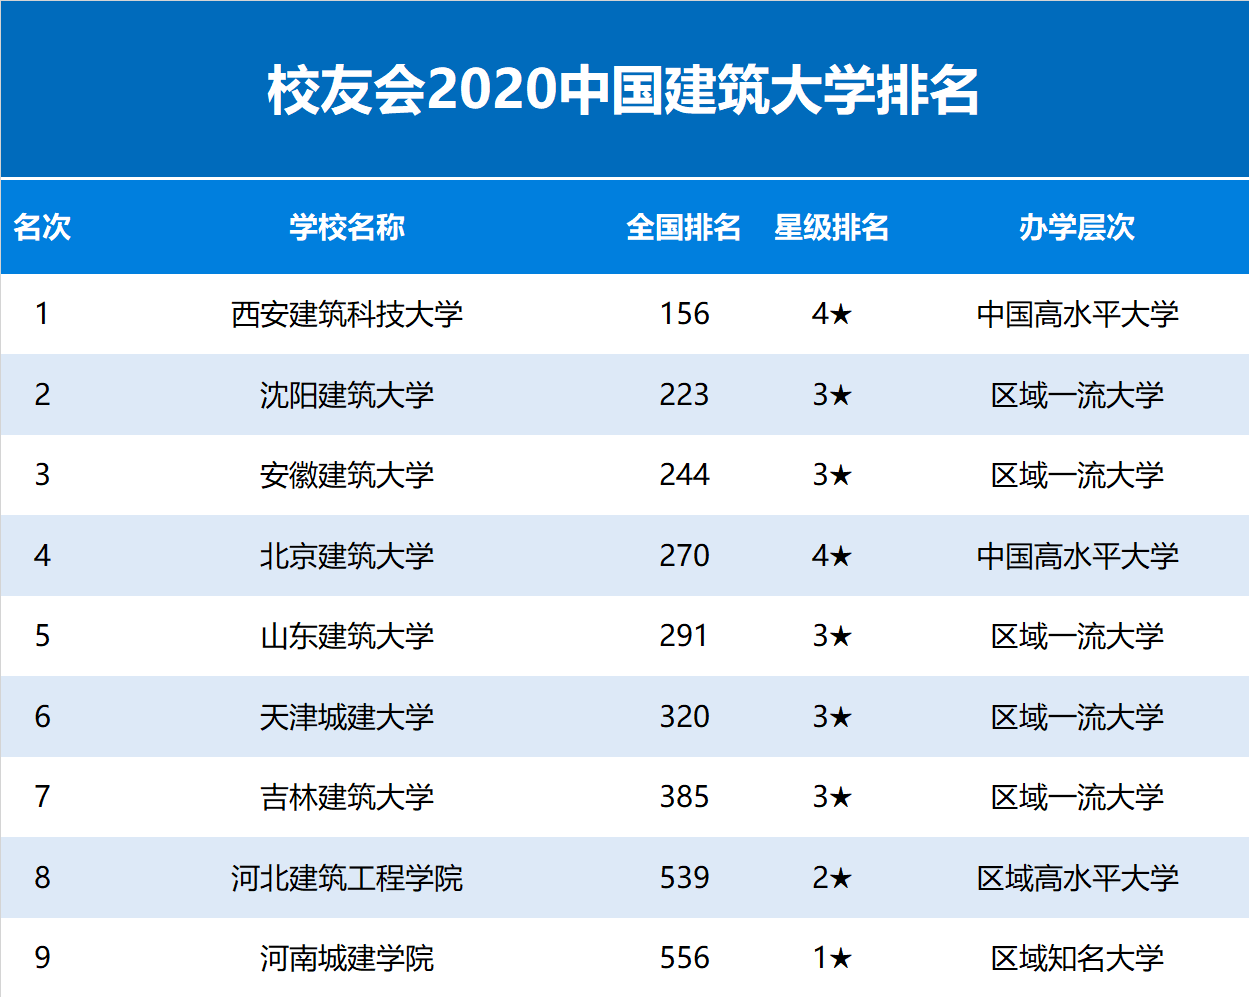 2020中国建筑大学排名公布,西安建筑科技